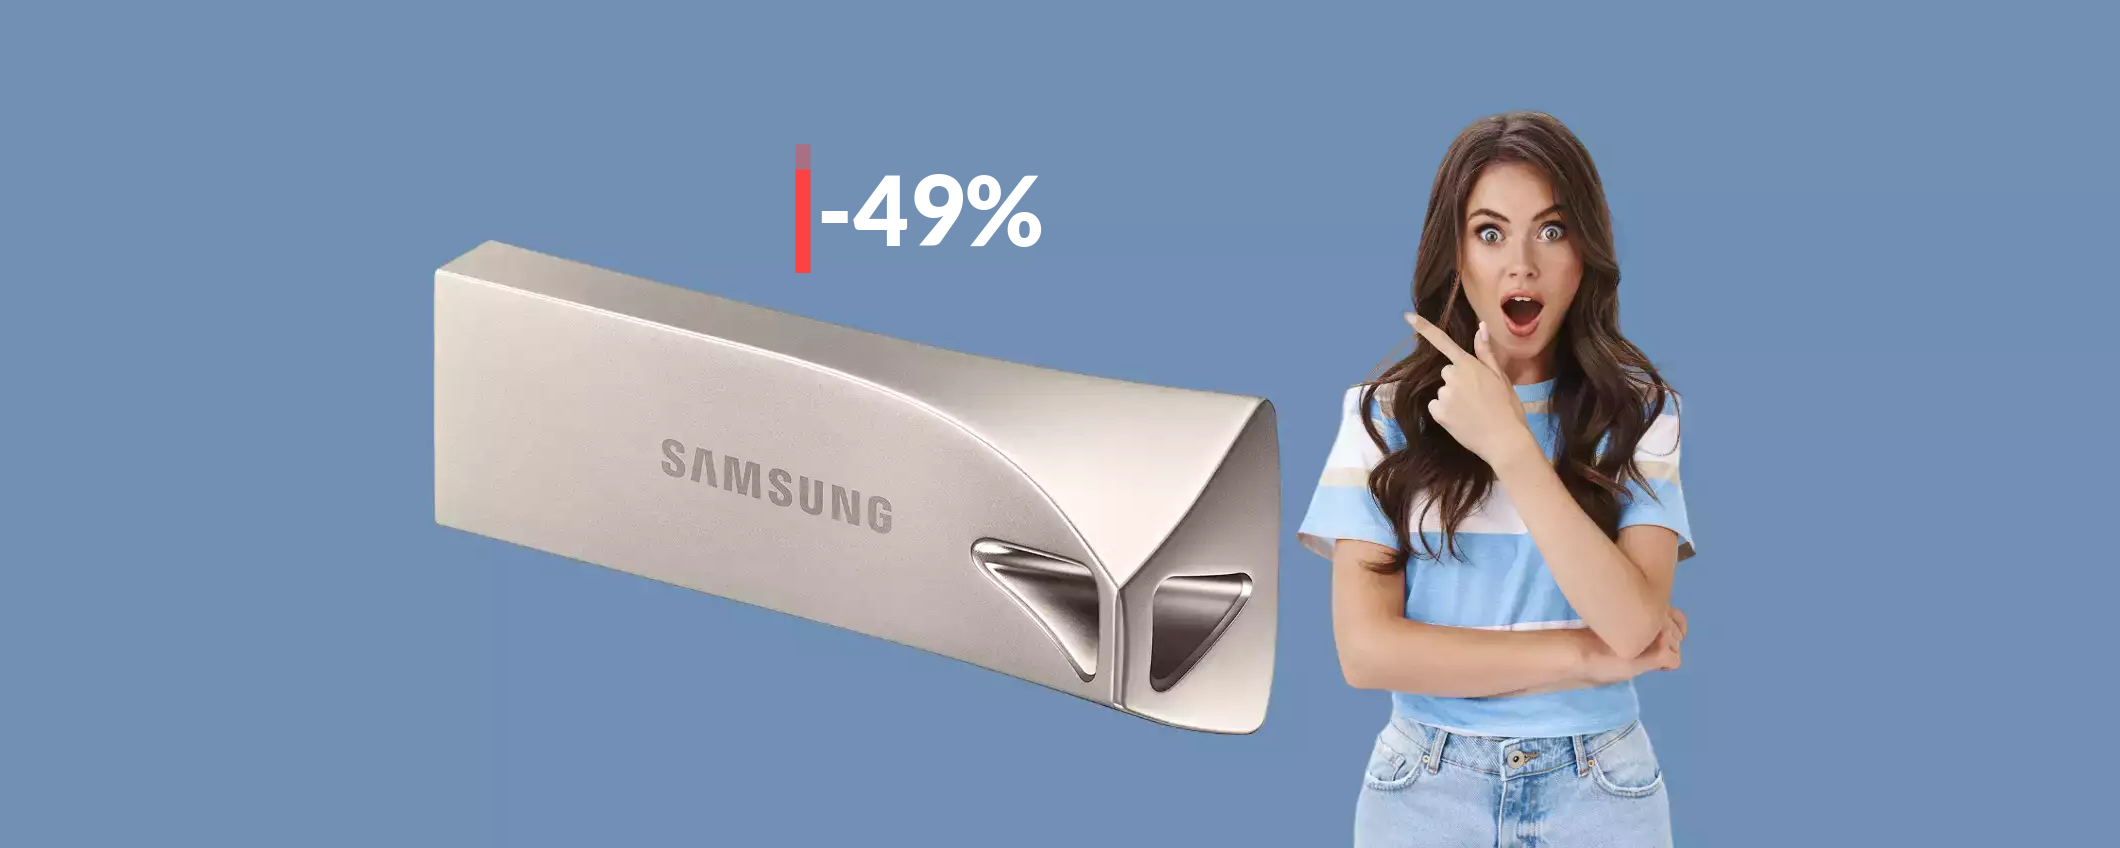 Chiavetta USB Samsung 64GB: un'autentica BOMBA a soli 13€